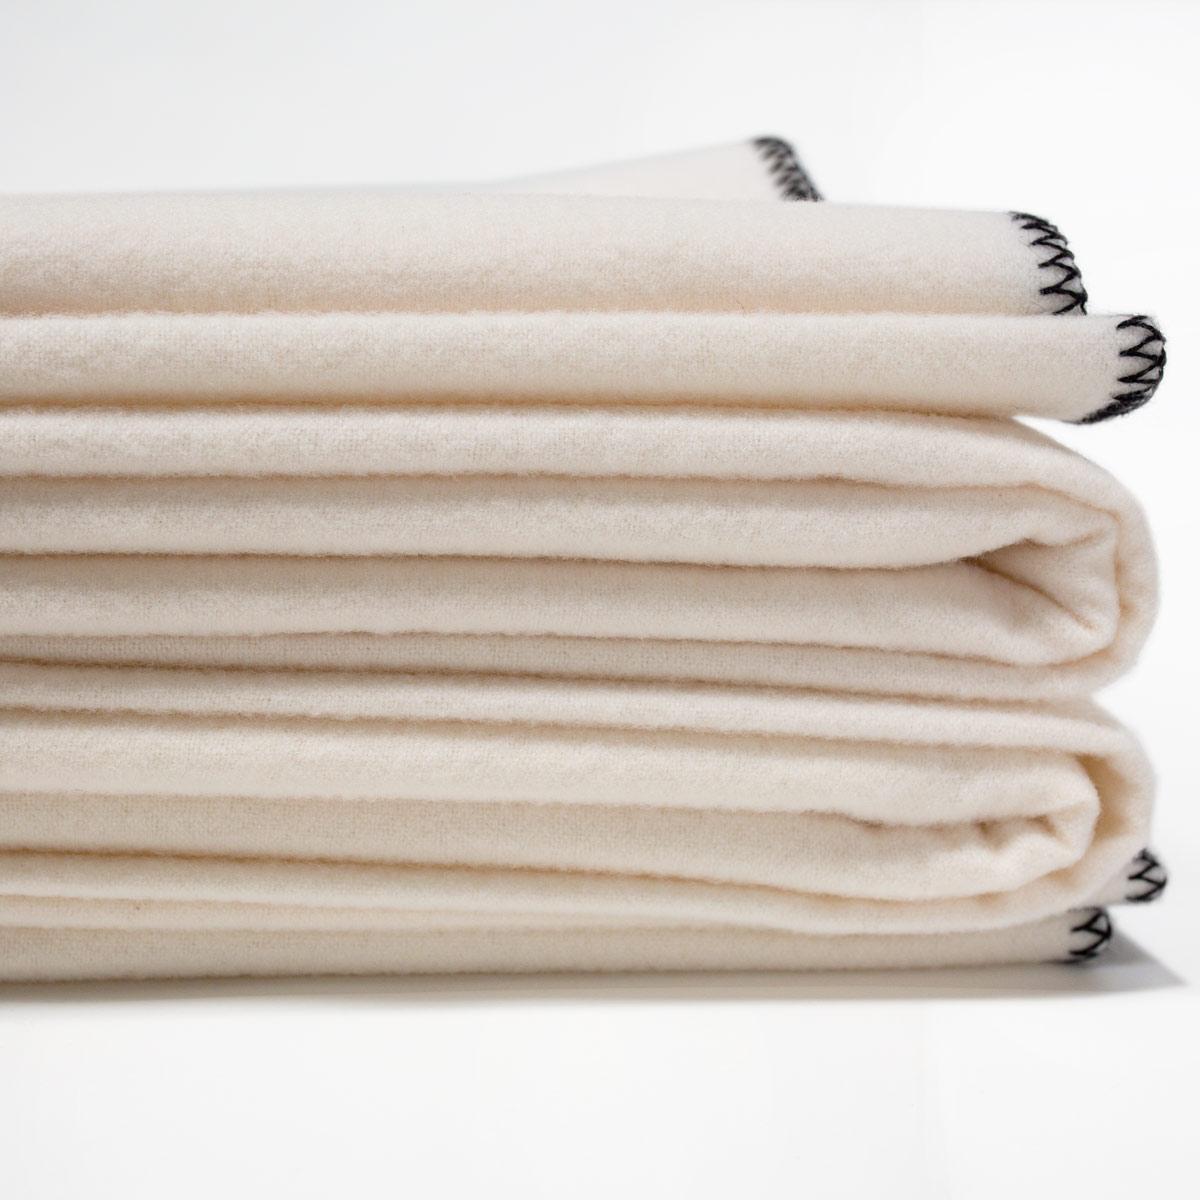 Die JG Classic Blanket ist eine maßgeschneiderte Decke, die in England aus weicher und hochwertiger Kaschmir- und Lammwollmischung gewalkt wird - eine seltene Mischung, die in dieser großzügigen Größe nur schwer zu finden ist. Sie wird mit unserem